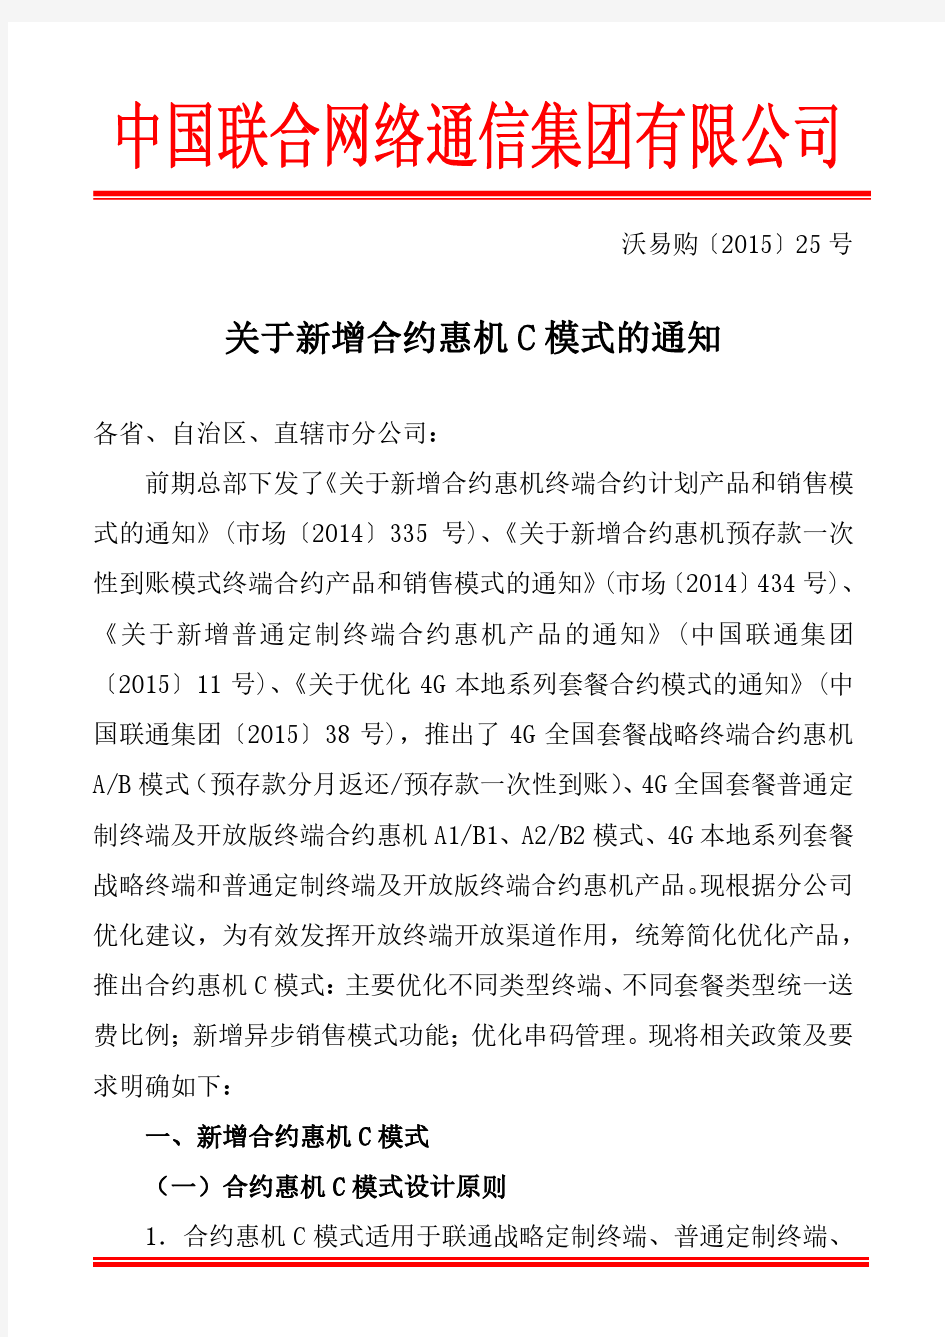 中国联通合约政策!关于新增合约惠机C模式的通知(沃易购[2015]25号)